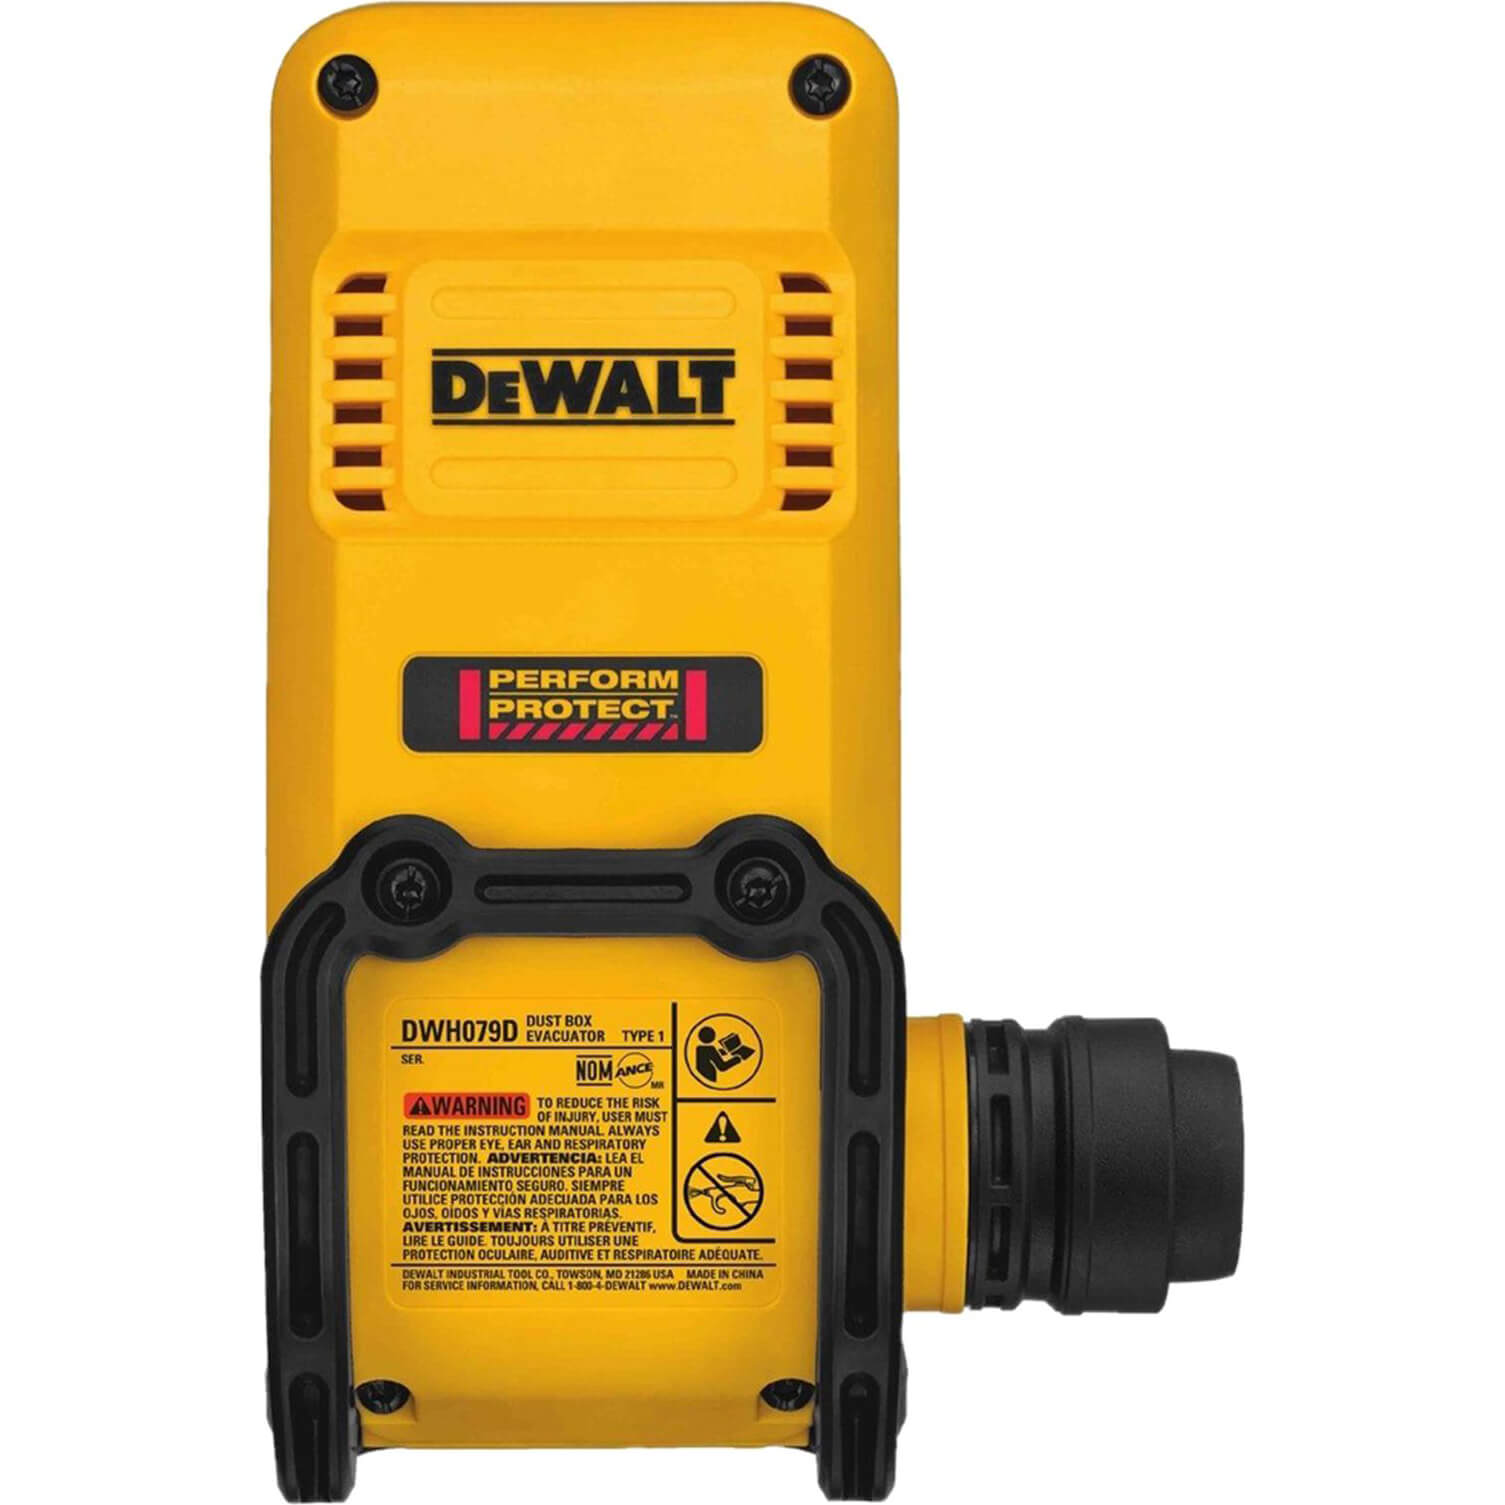 Image of DeWalt DWH079D-XJ Dust Box Evacuator